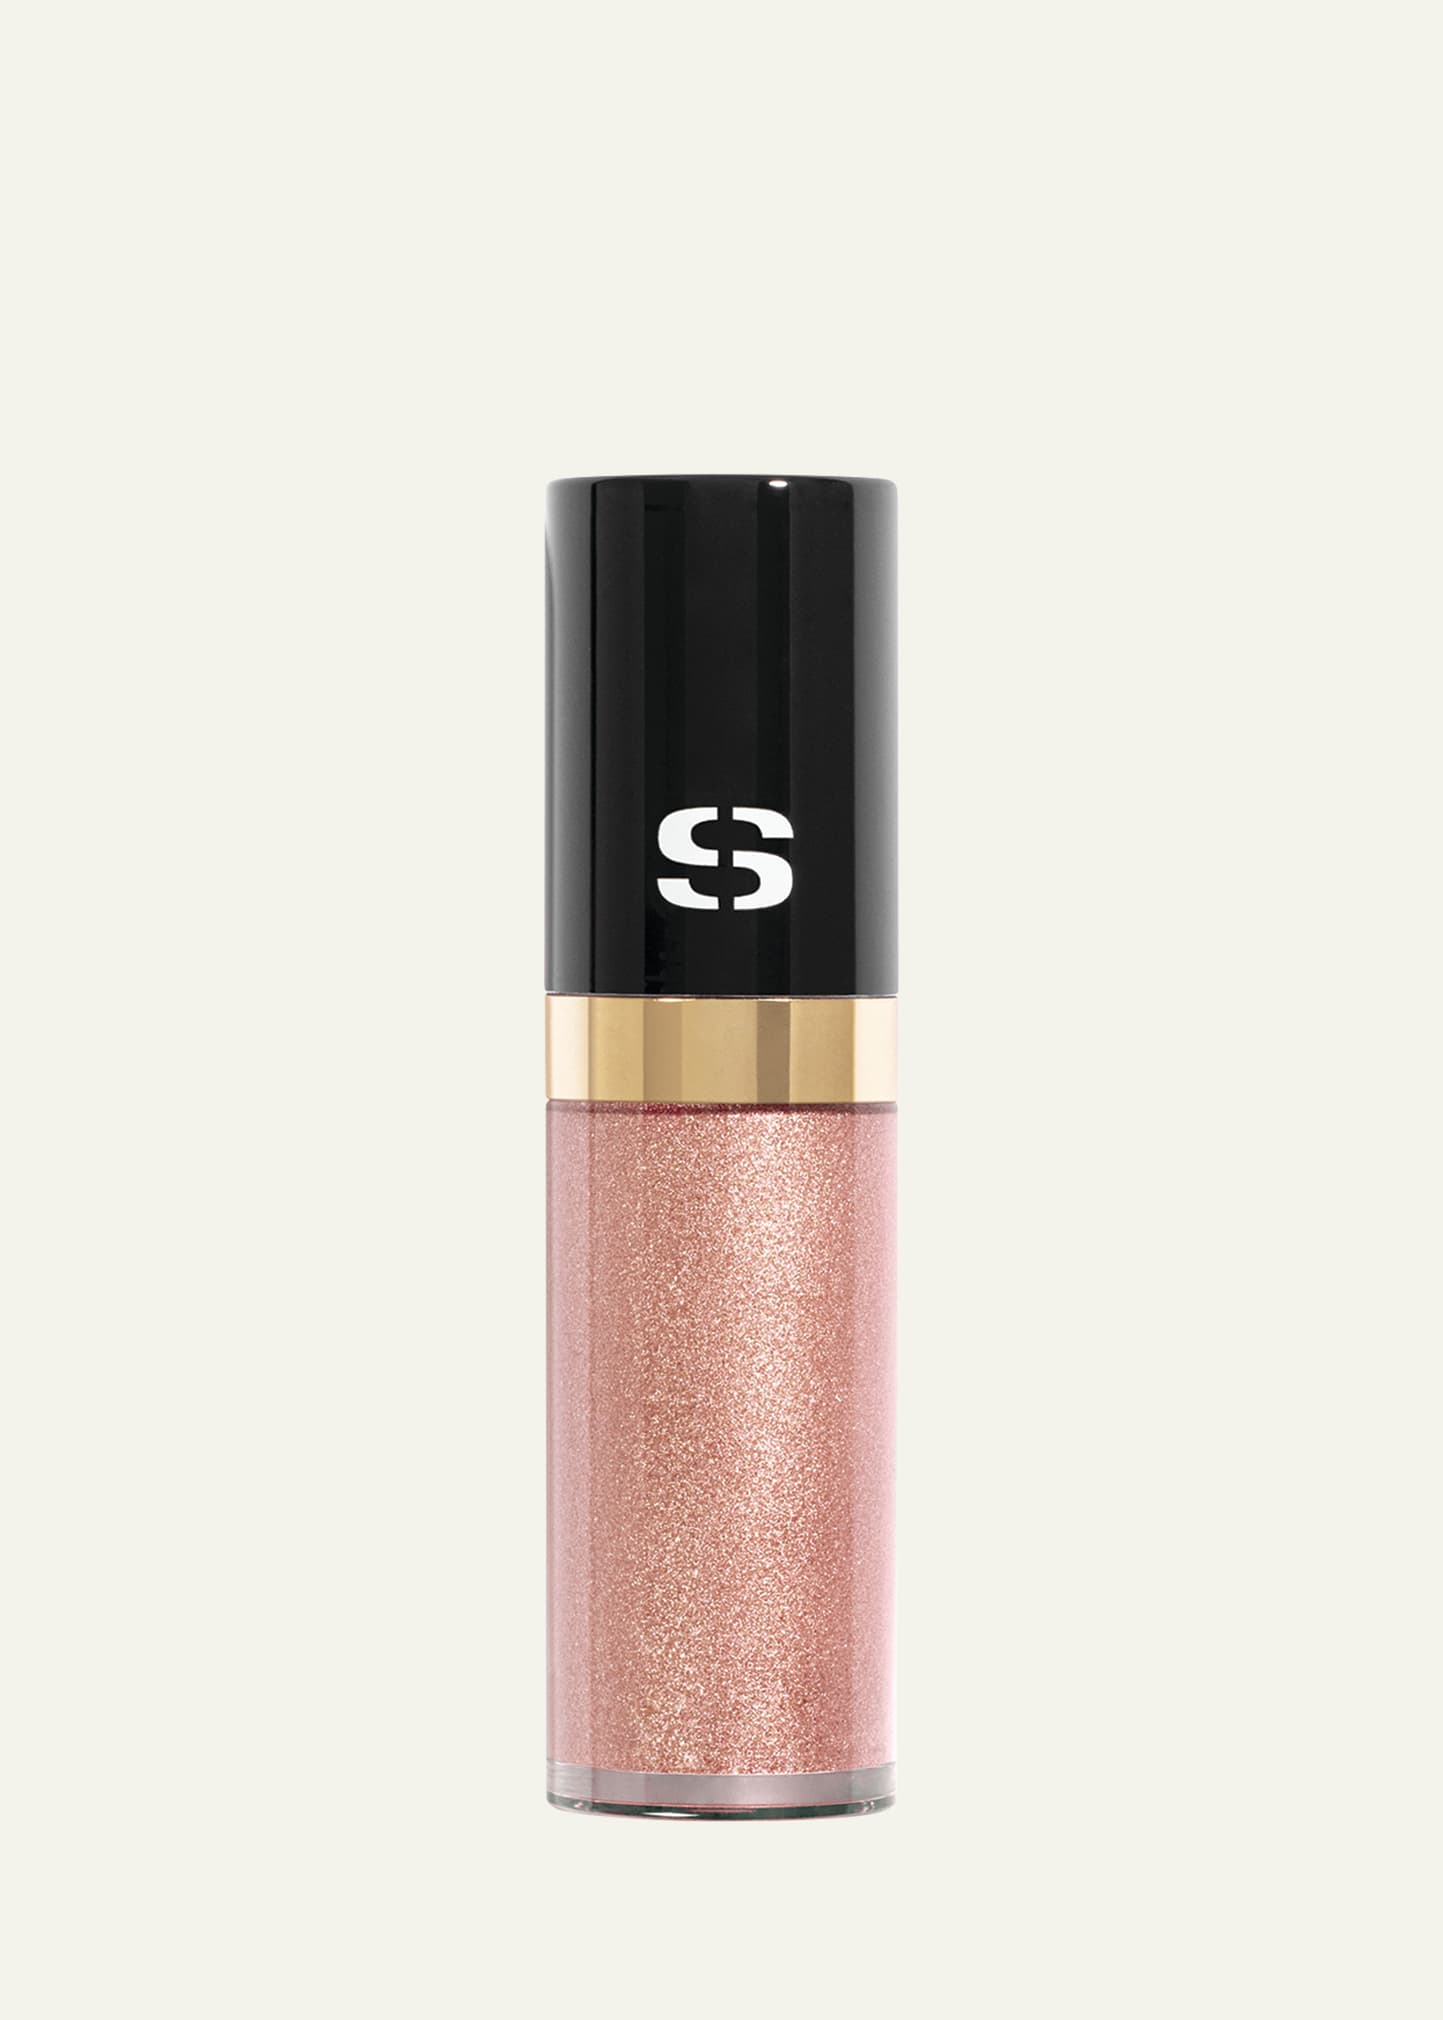 Sisley Paris Ombre Eclat Liquide Eyeshadow In 3 Pink Gold